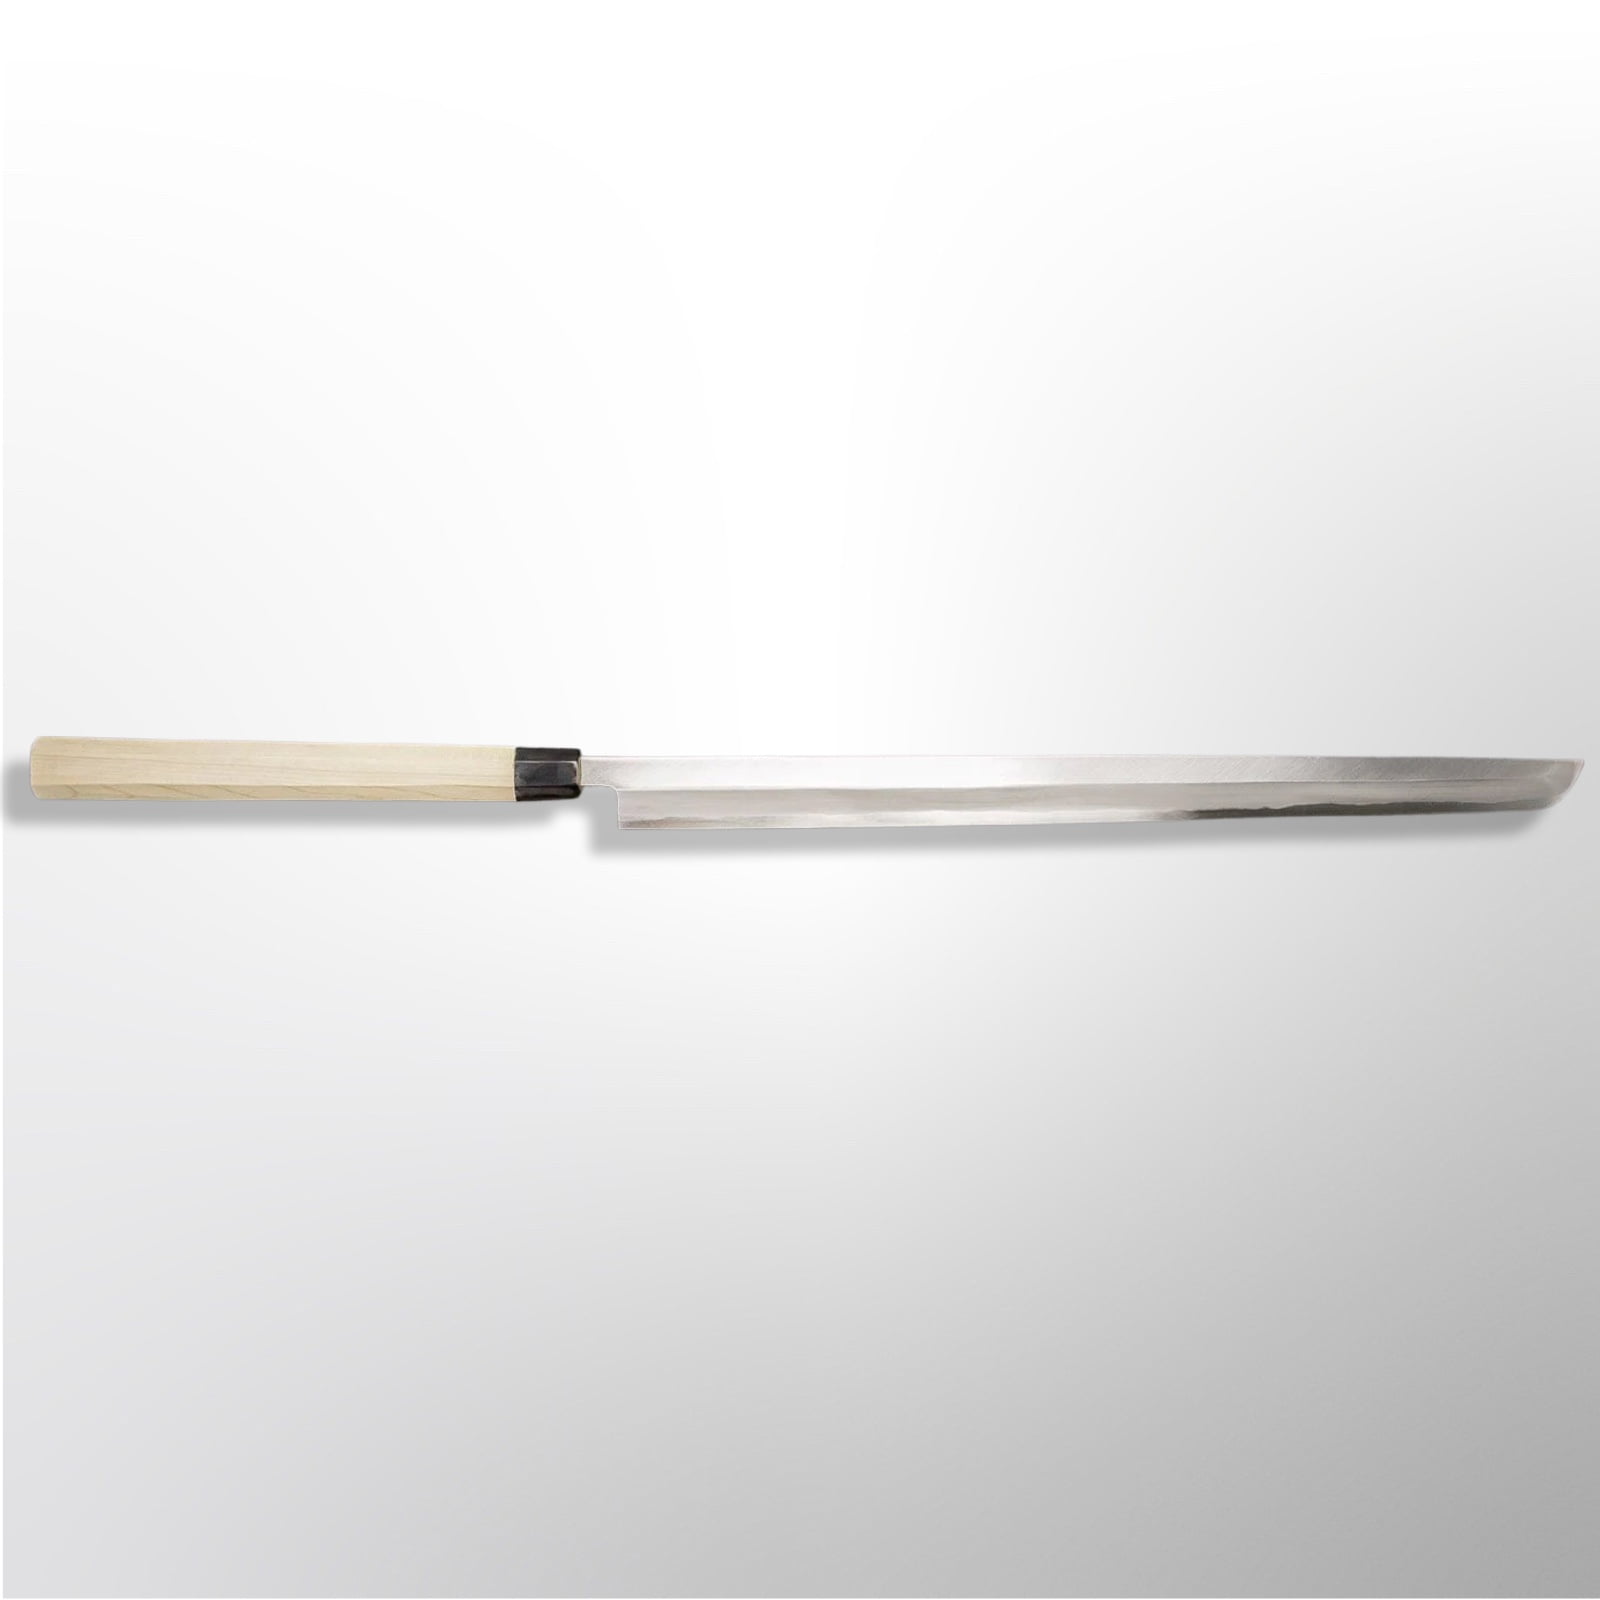 סכין מגורו-קירי 450מ״מ פלדת פחמן יפנית שירוגאמי 2 עטופה פלדת אל-חלד גימור מט מלוטש סאקאיי טקיוקי יפן SKTAKAYU03181